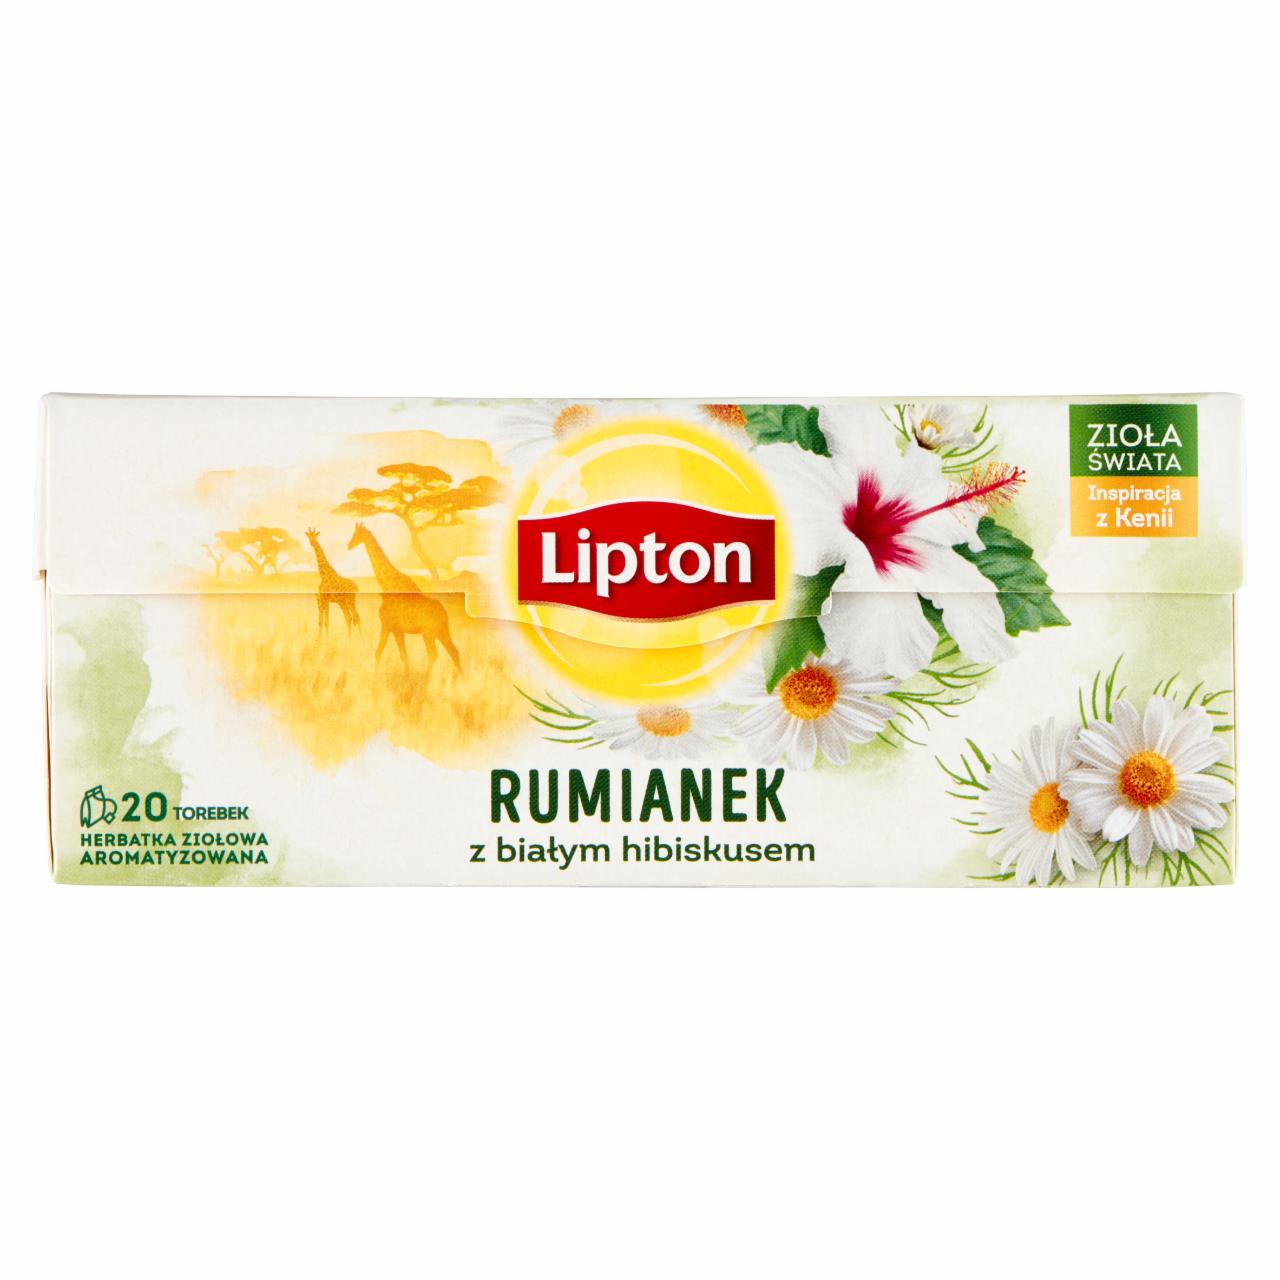 Zdjęcia - Lipton Herbatka ziołowa aromatyzowana rumianek z białym hibiskusem 20 g (20 torebek)